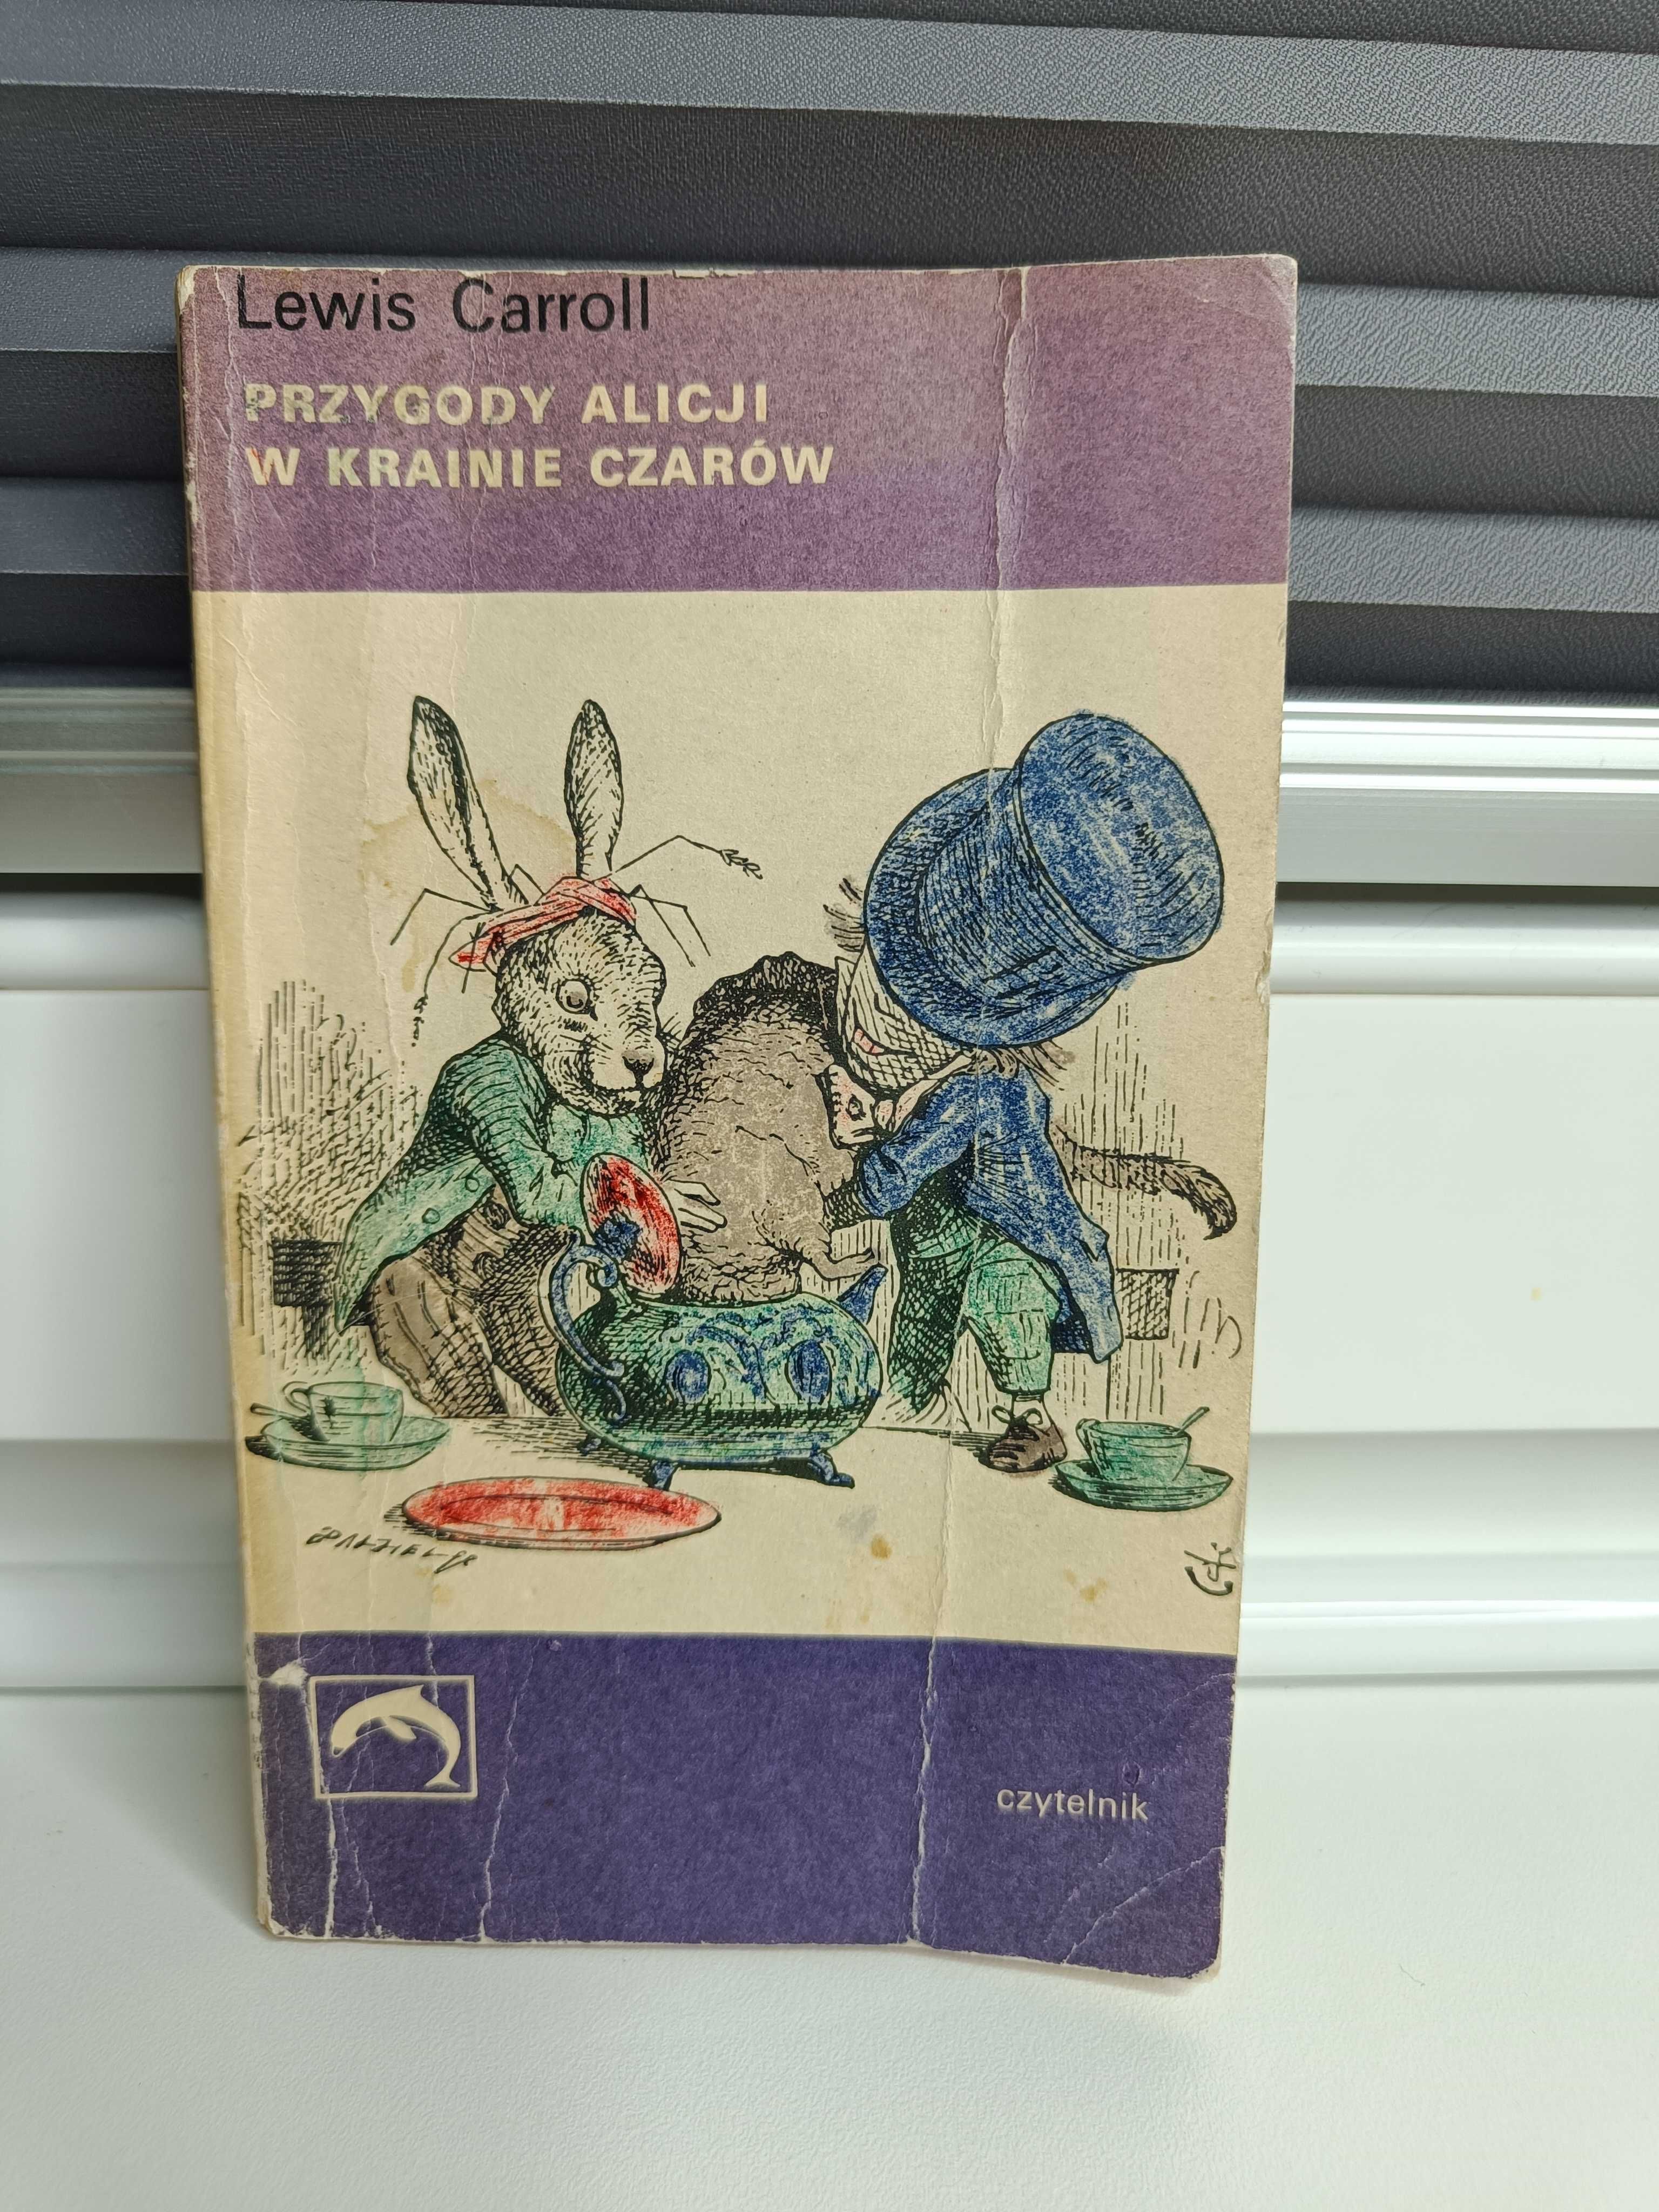 Lewis Carroll "Alicja w Krainie Czarów"